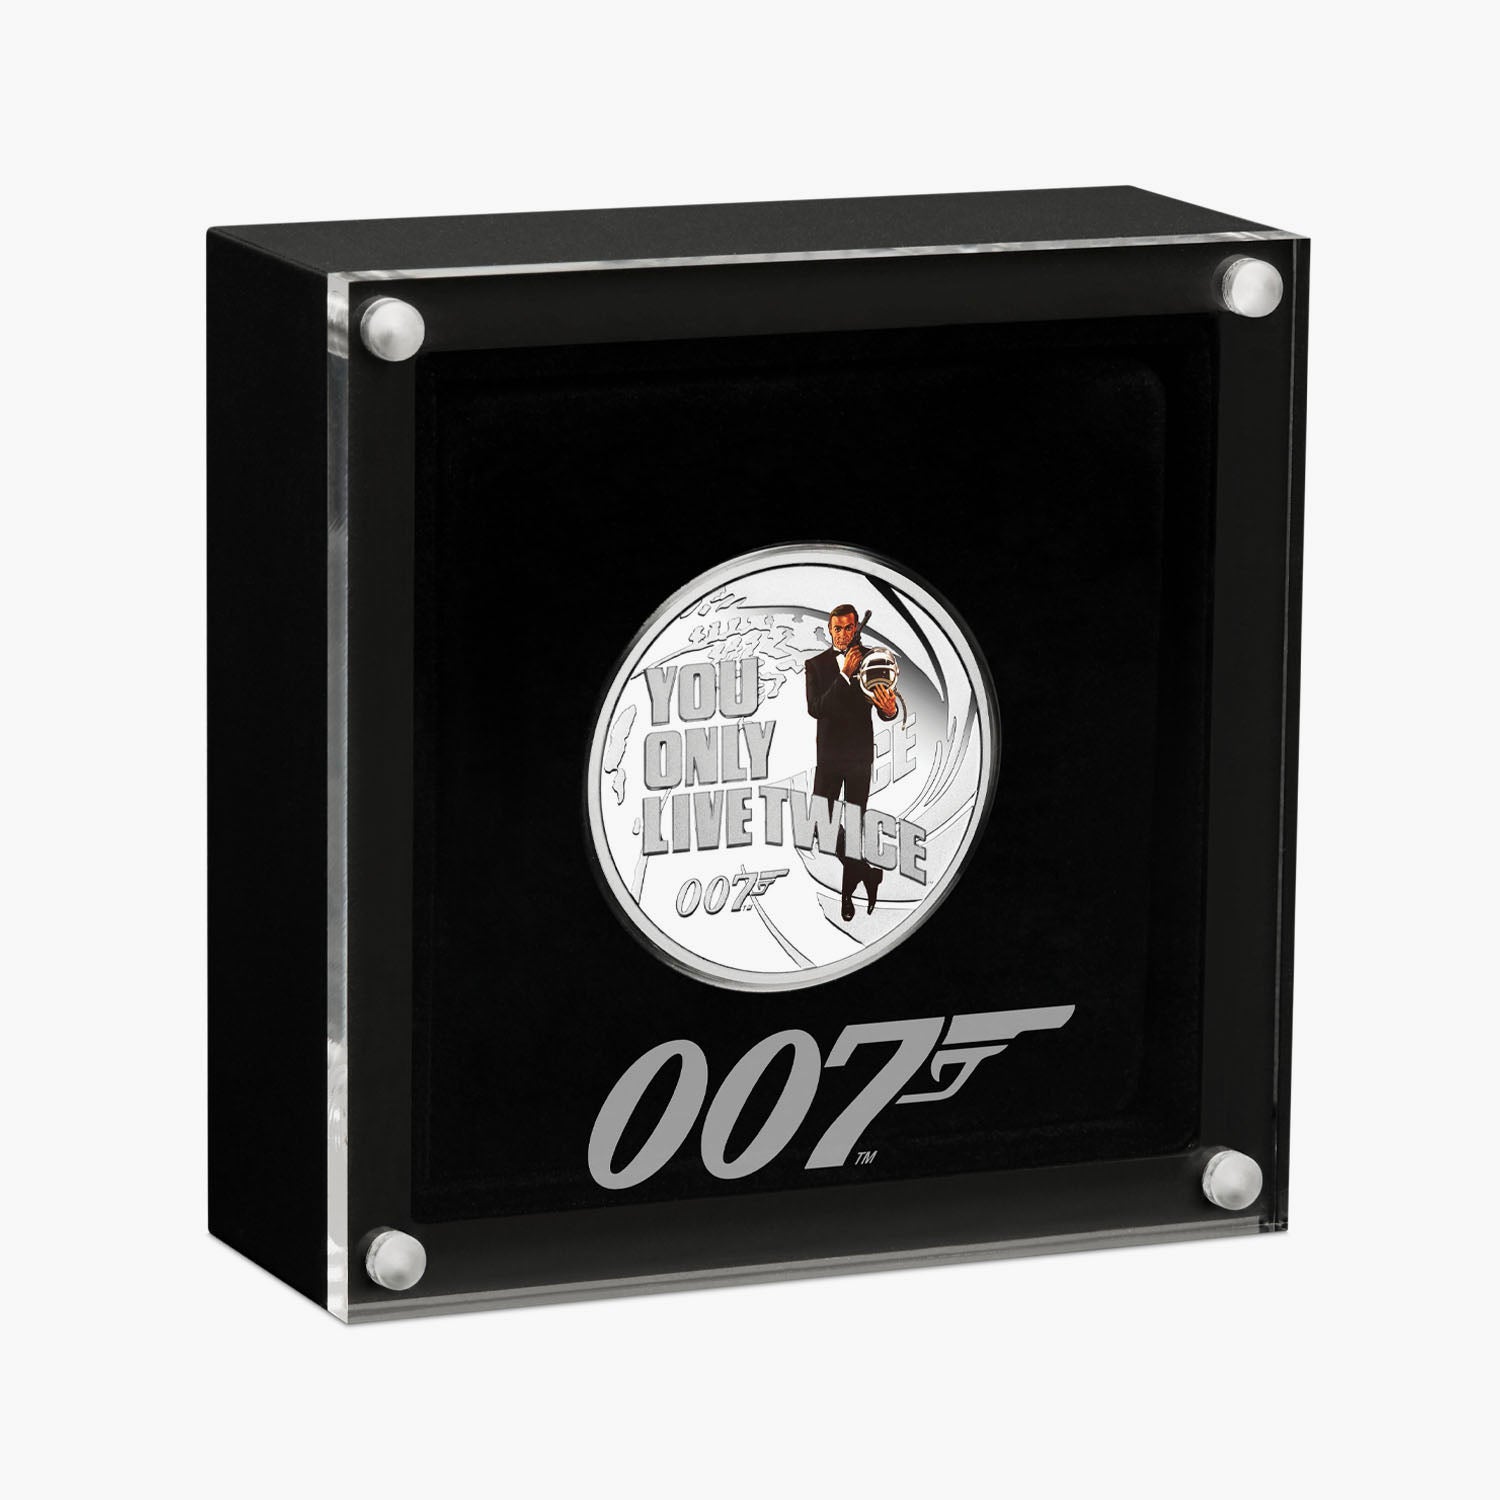 ジェームズ・ボンド - 007は二度死ぬ ソリッドシルバー映画コイン